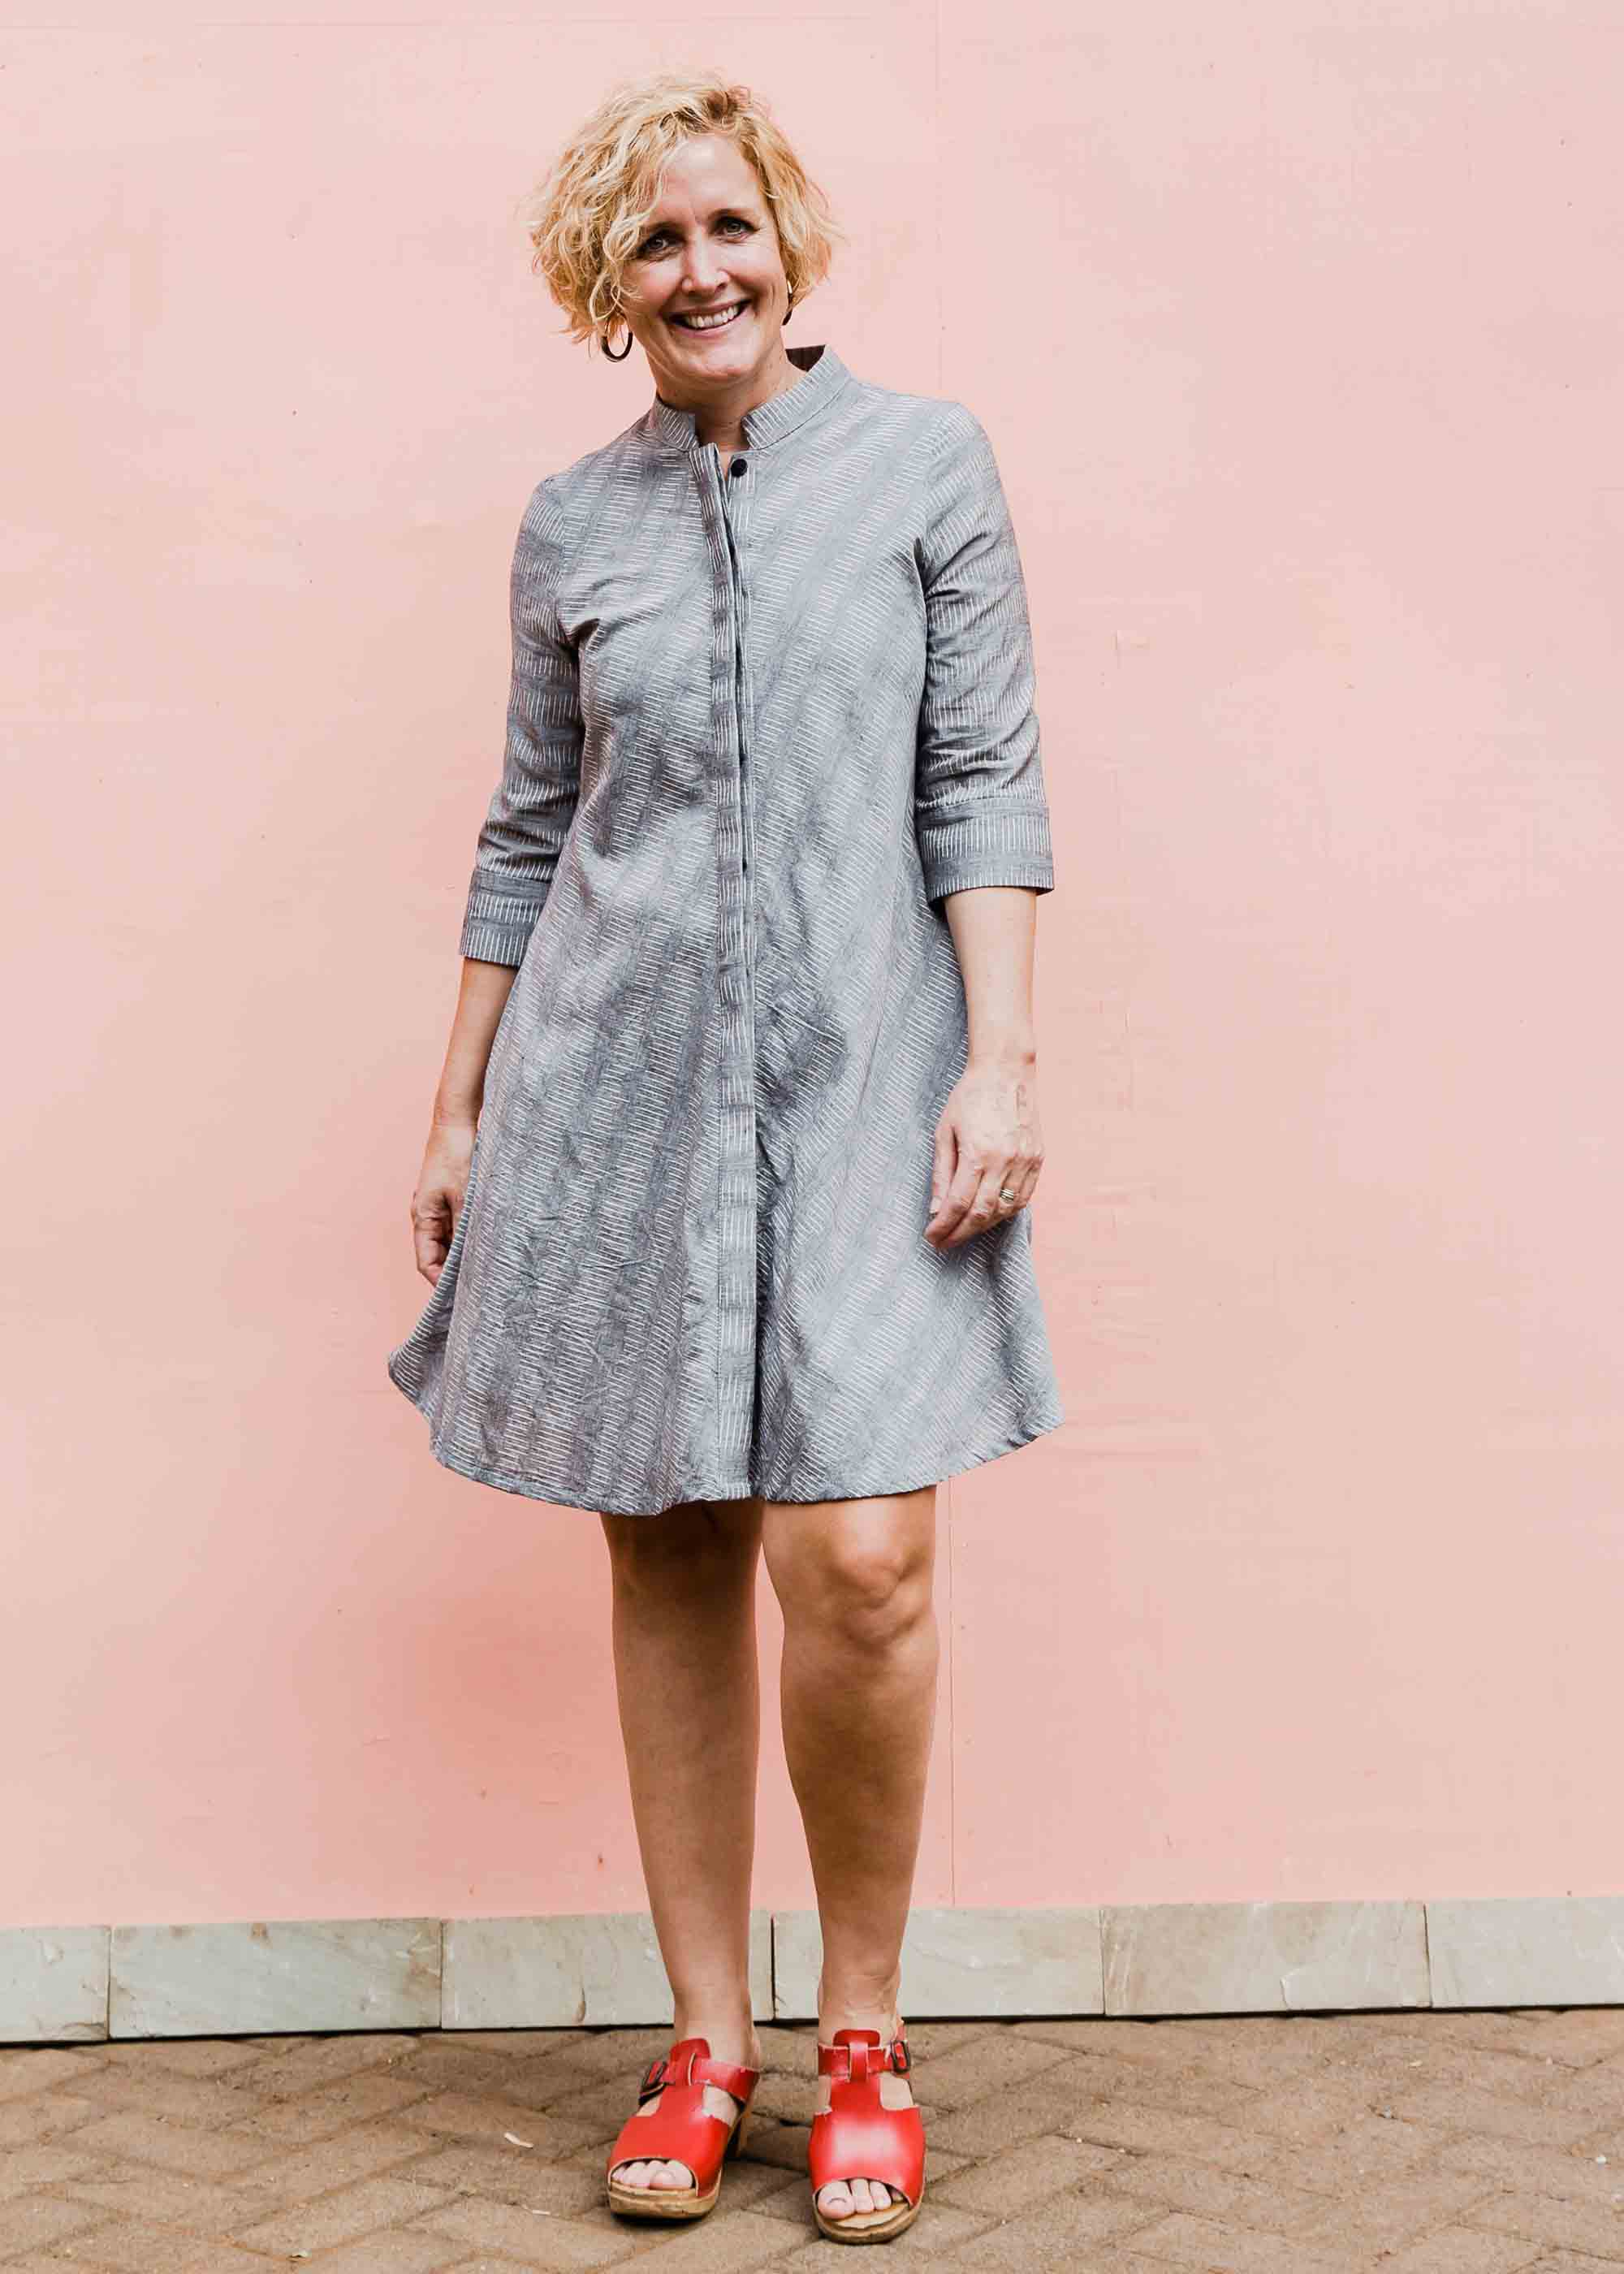 model wearing a grey ikat dress